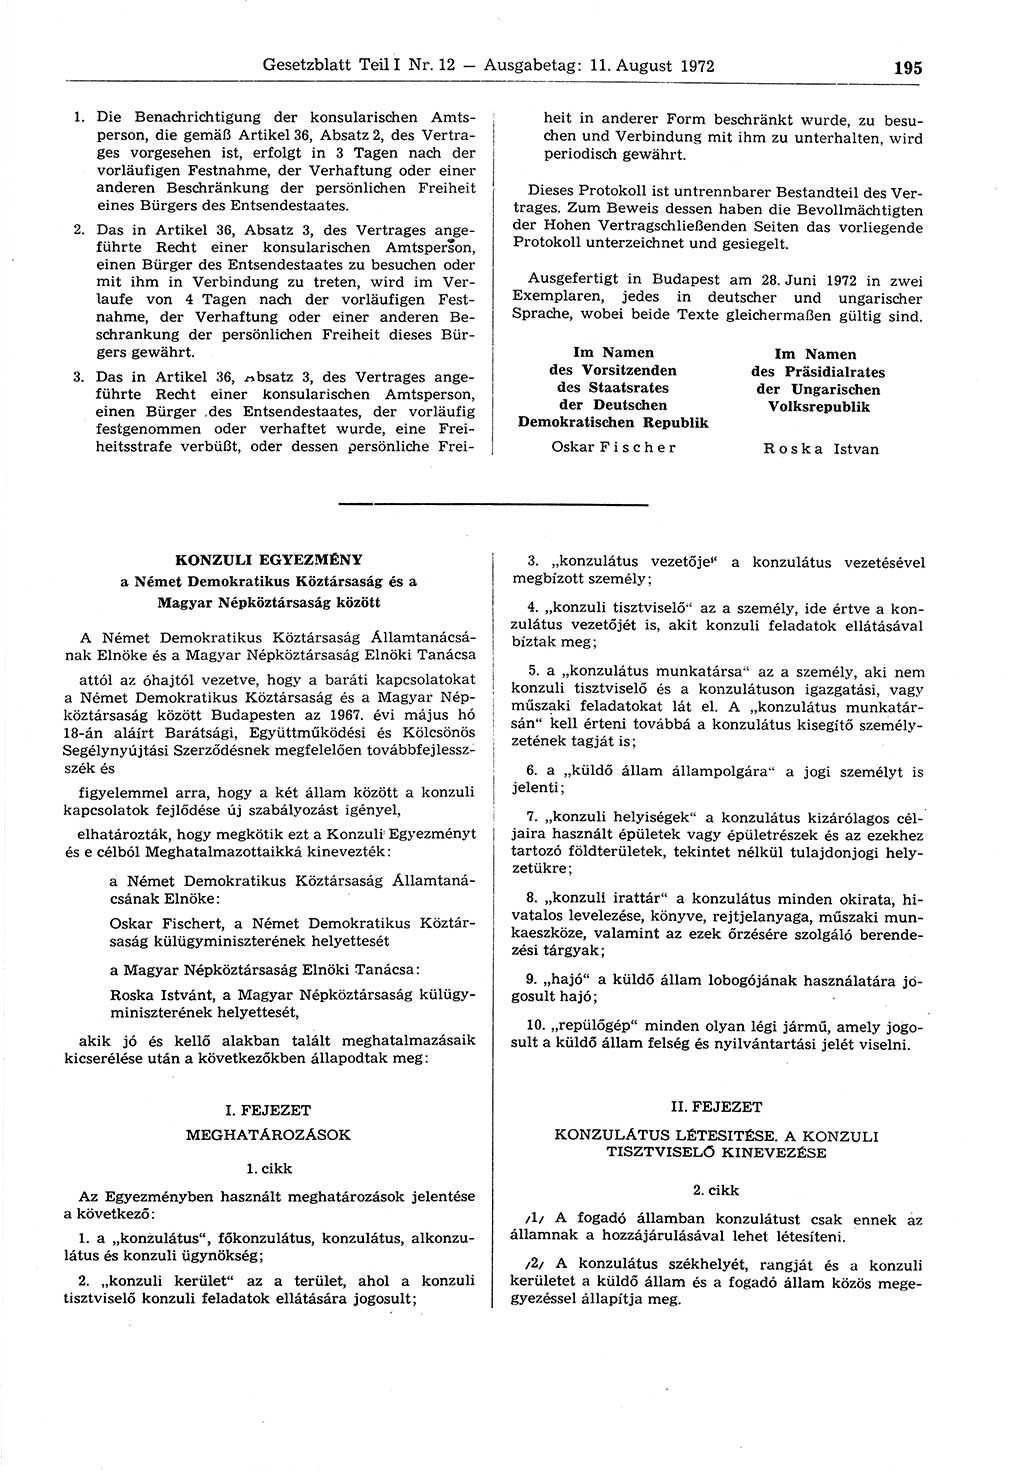 Gesetzblatt (GBl.) der Deutschen Demokratischen Republik (DDR) Teil Ⅰ 1972, Seite 195 (GBl. DDR Ⅰ 1972, S. 195)